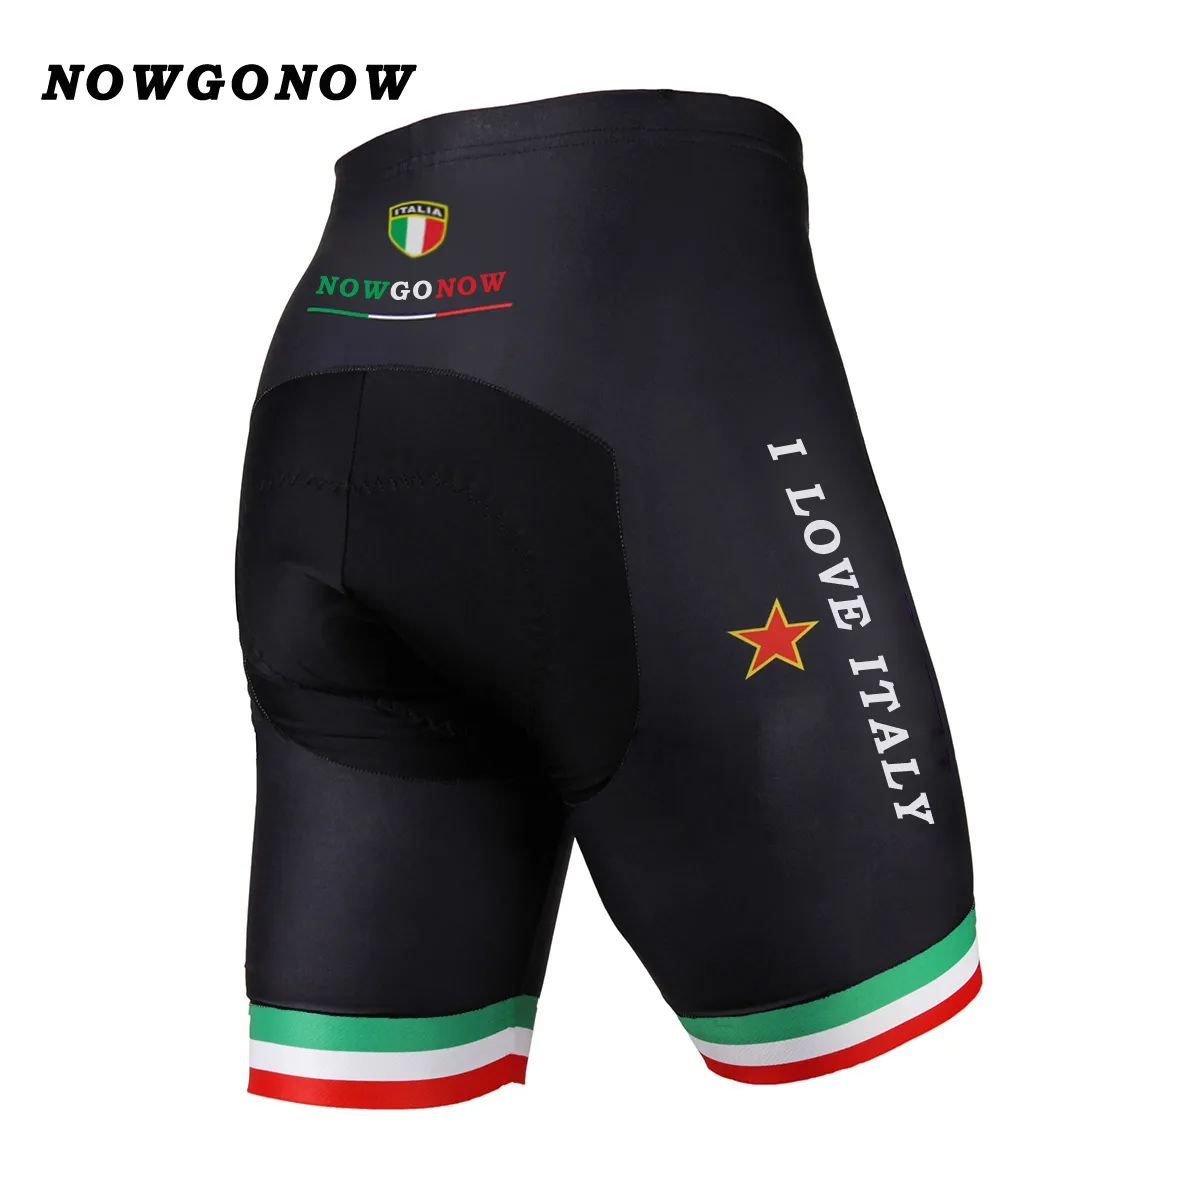 Мужские шорты для велоспорта на заказ, одежда 2017 года, итальянская национальная черная одежда для велосипеда, любовь, Италия, дорога, горная езда, NOWGONOW ge185n